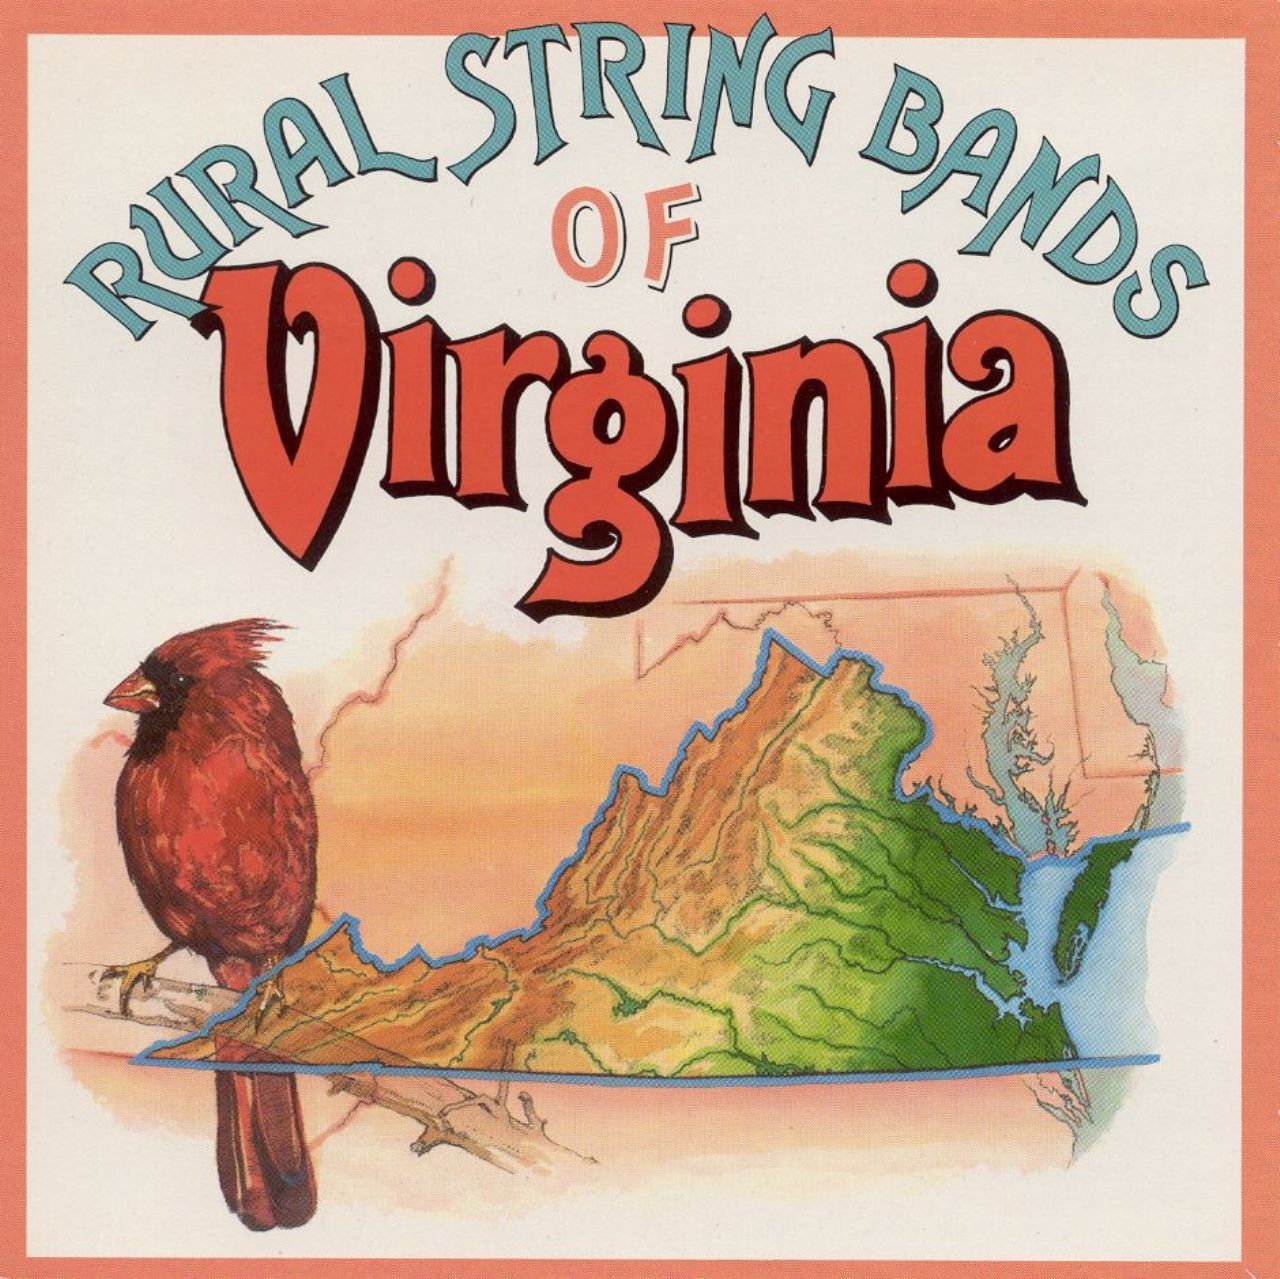 A.A.V.V. - Rural String Bands Of Virginia cover album